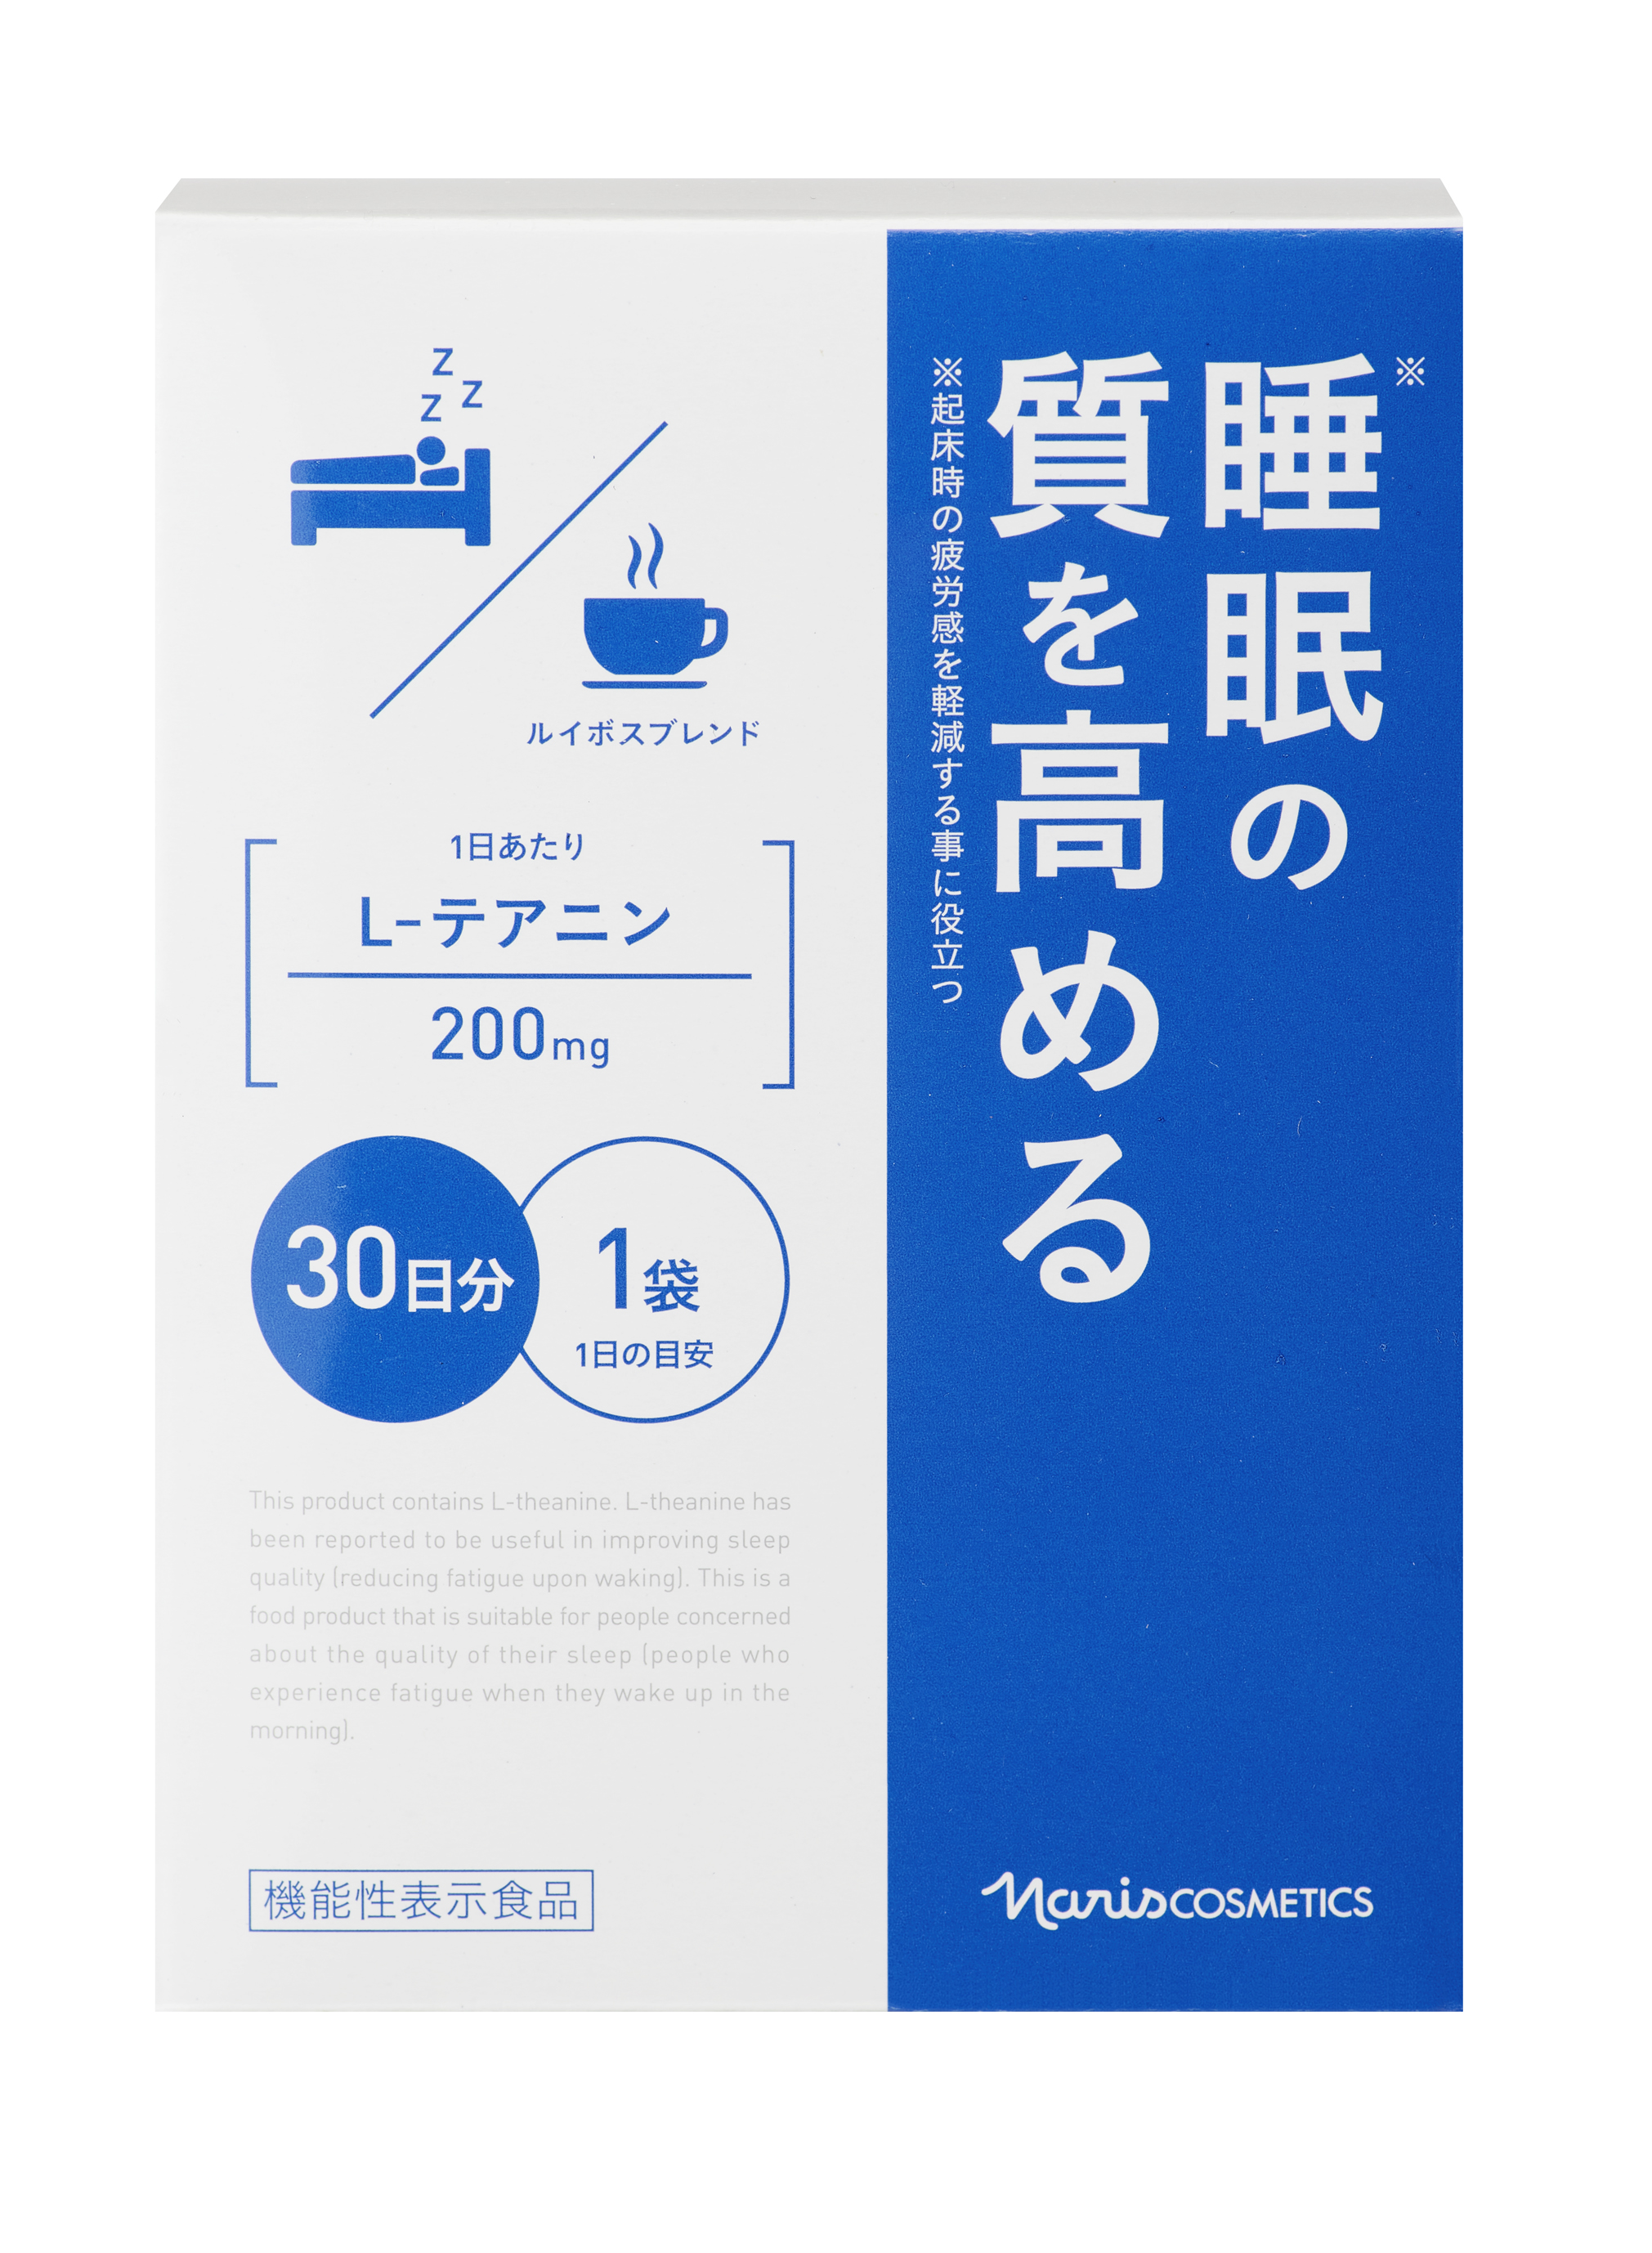 睡眠の質を高める 1機能性表示食品 リラックス茶新発売 株式会社ナリス化粧品のプレスリリース